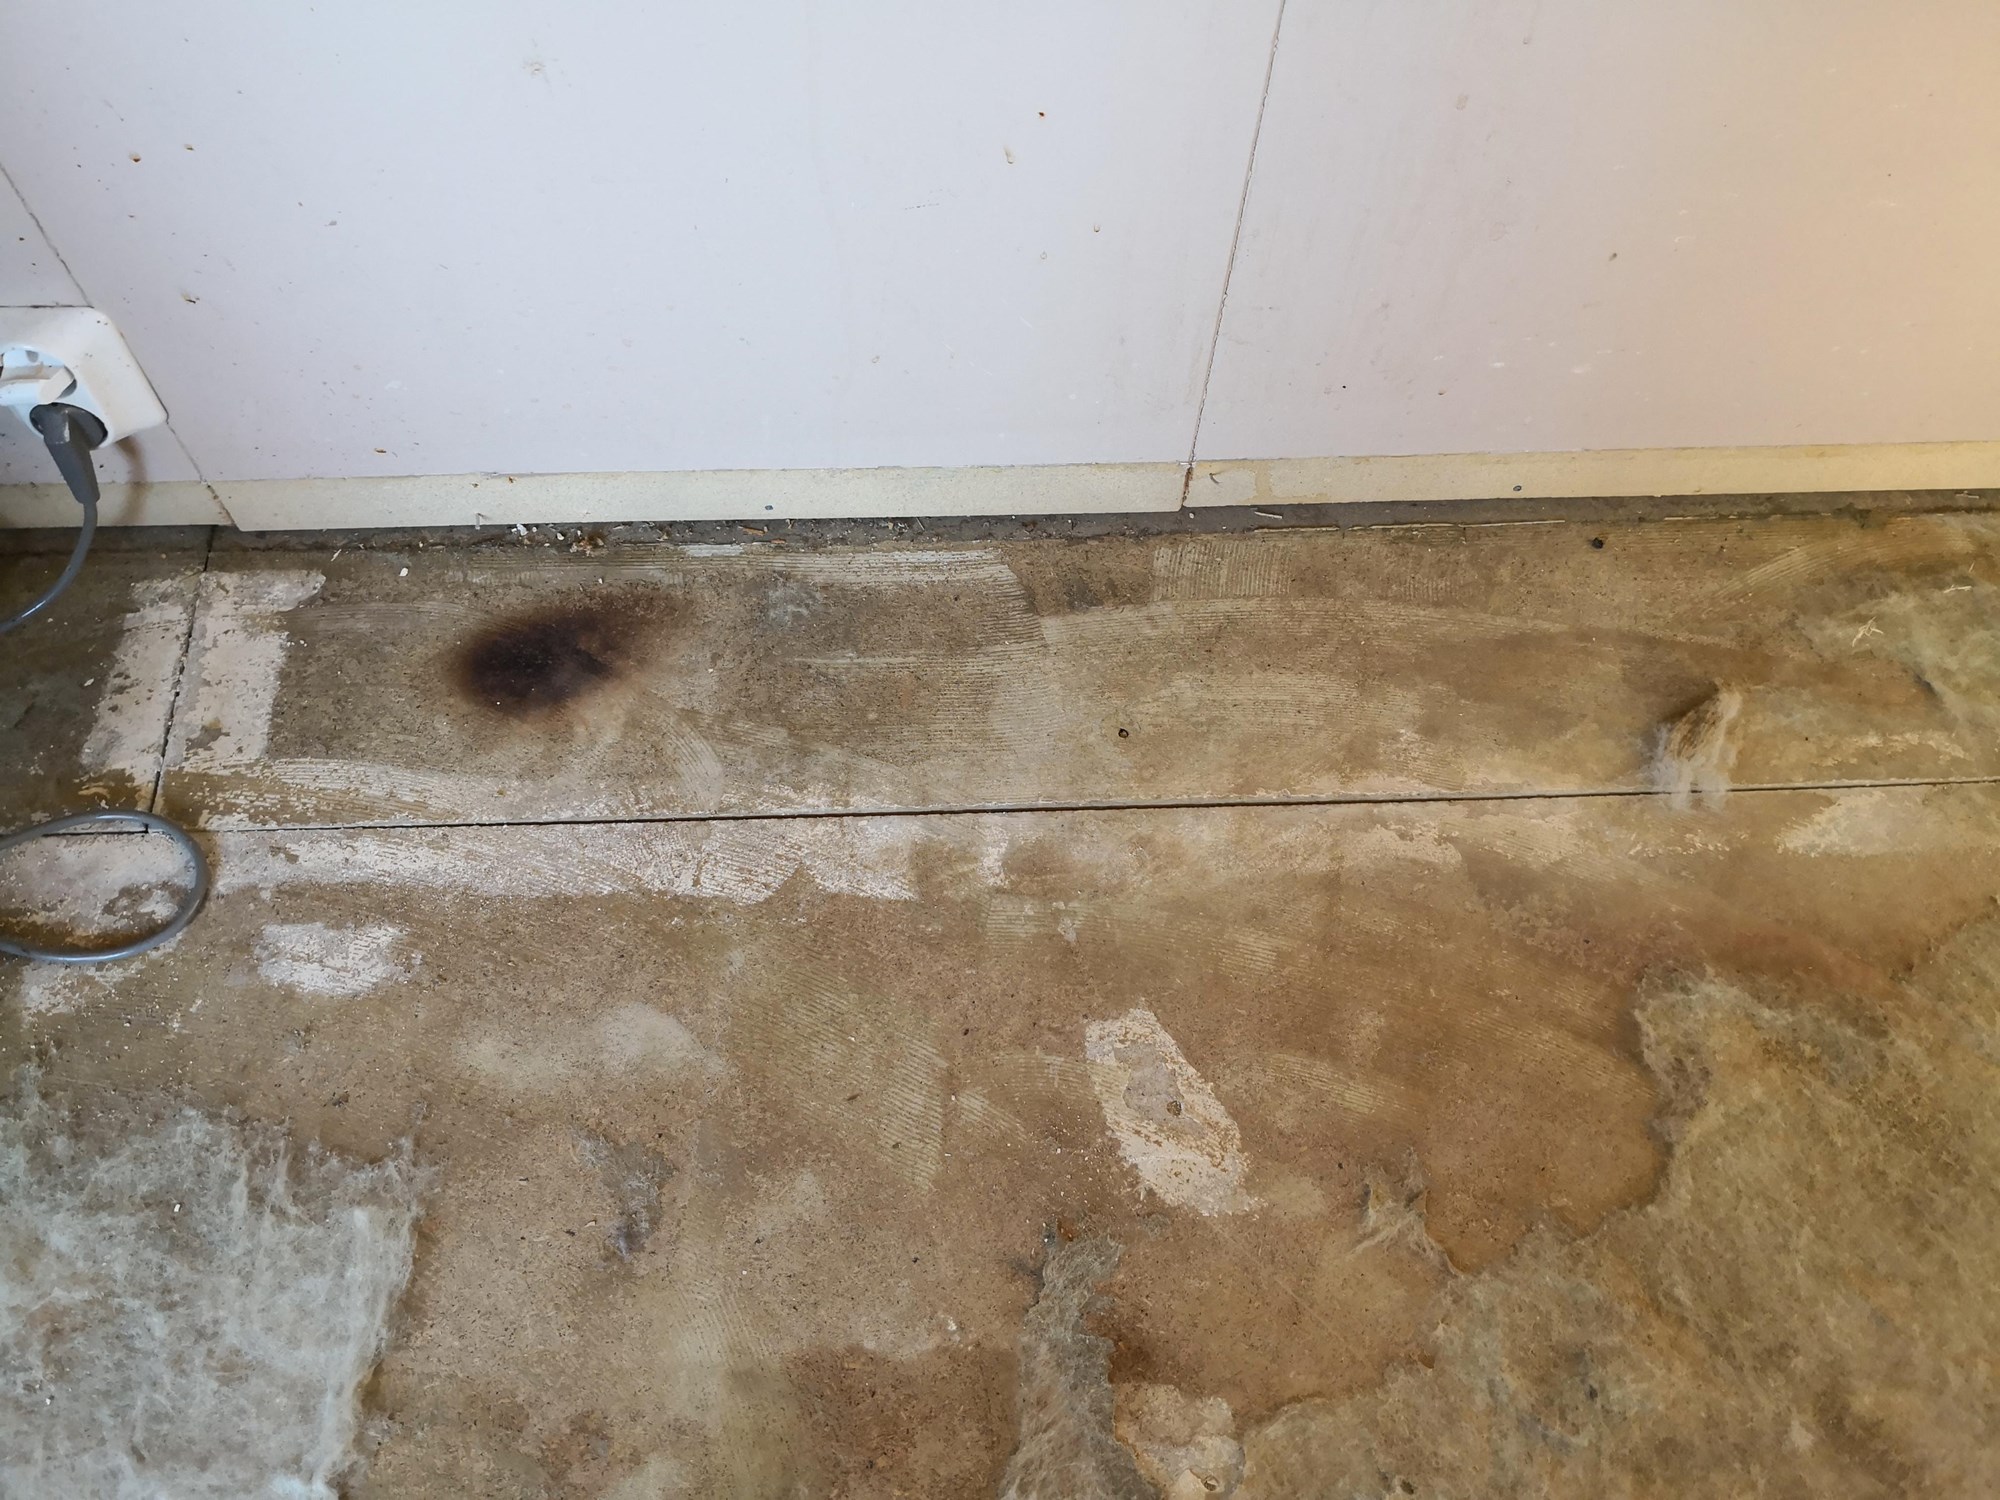 Asbest i dette limet/gulvet? - IMG_20190415_194311.jpg - eaks